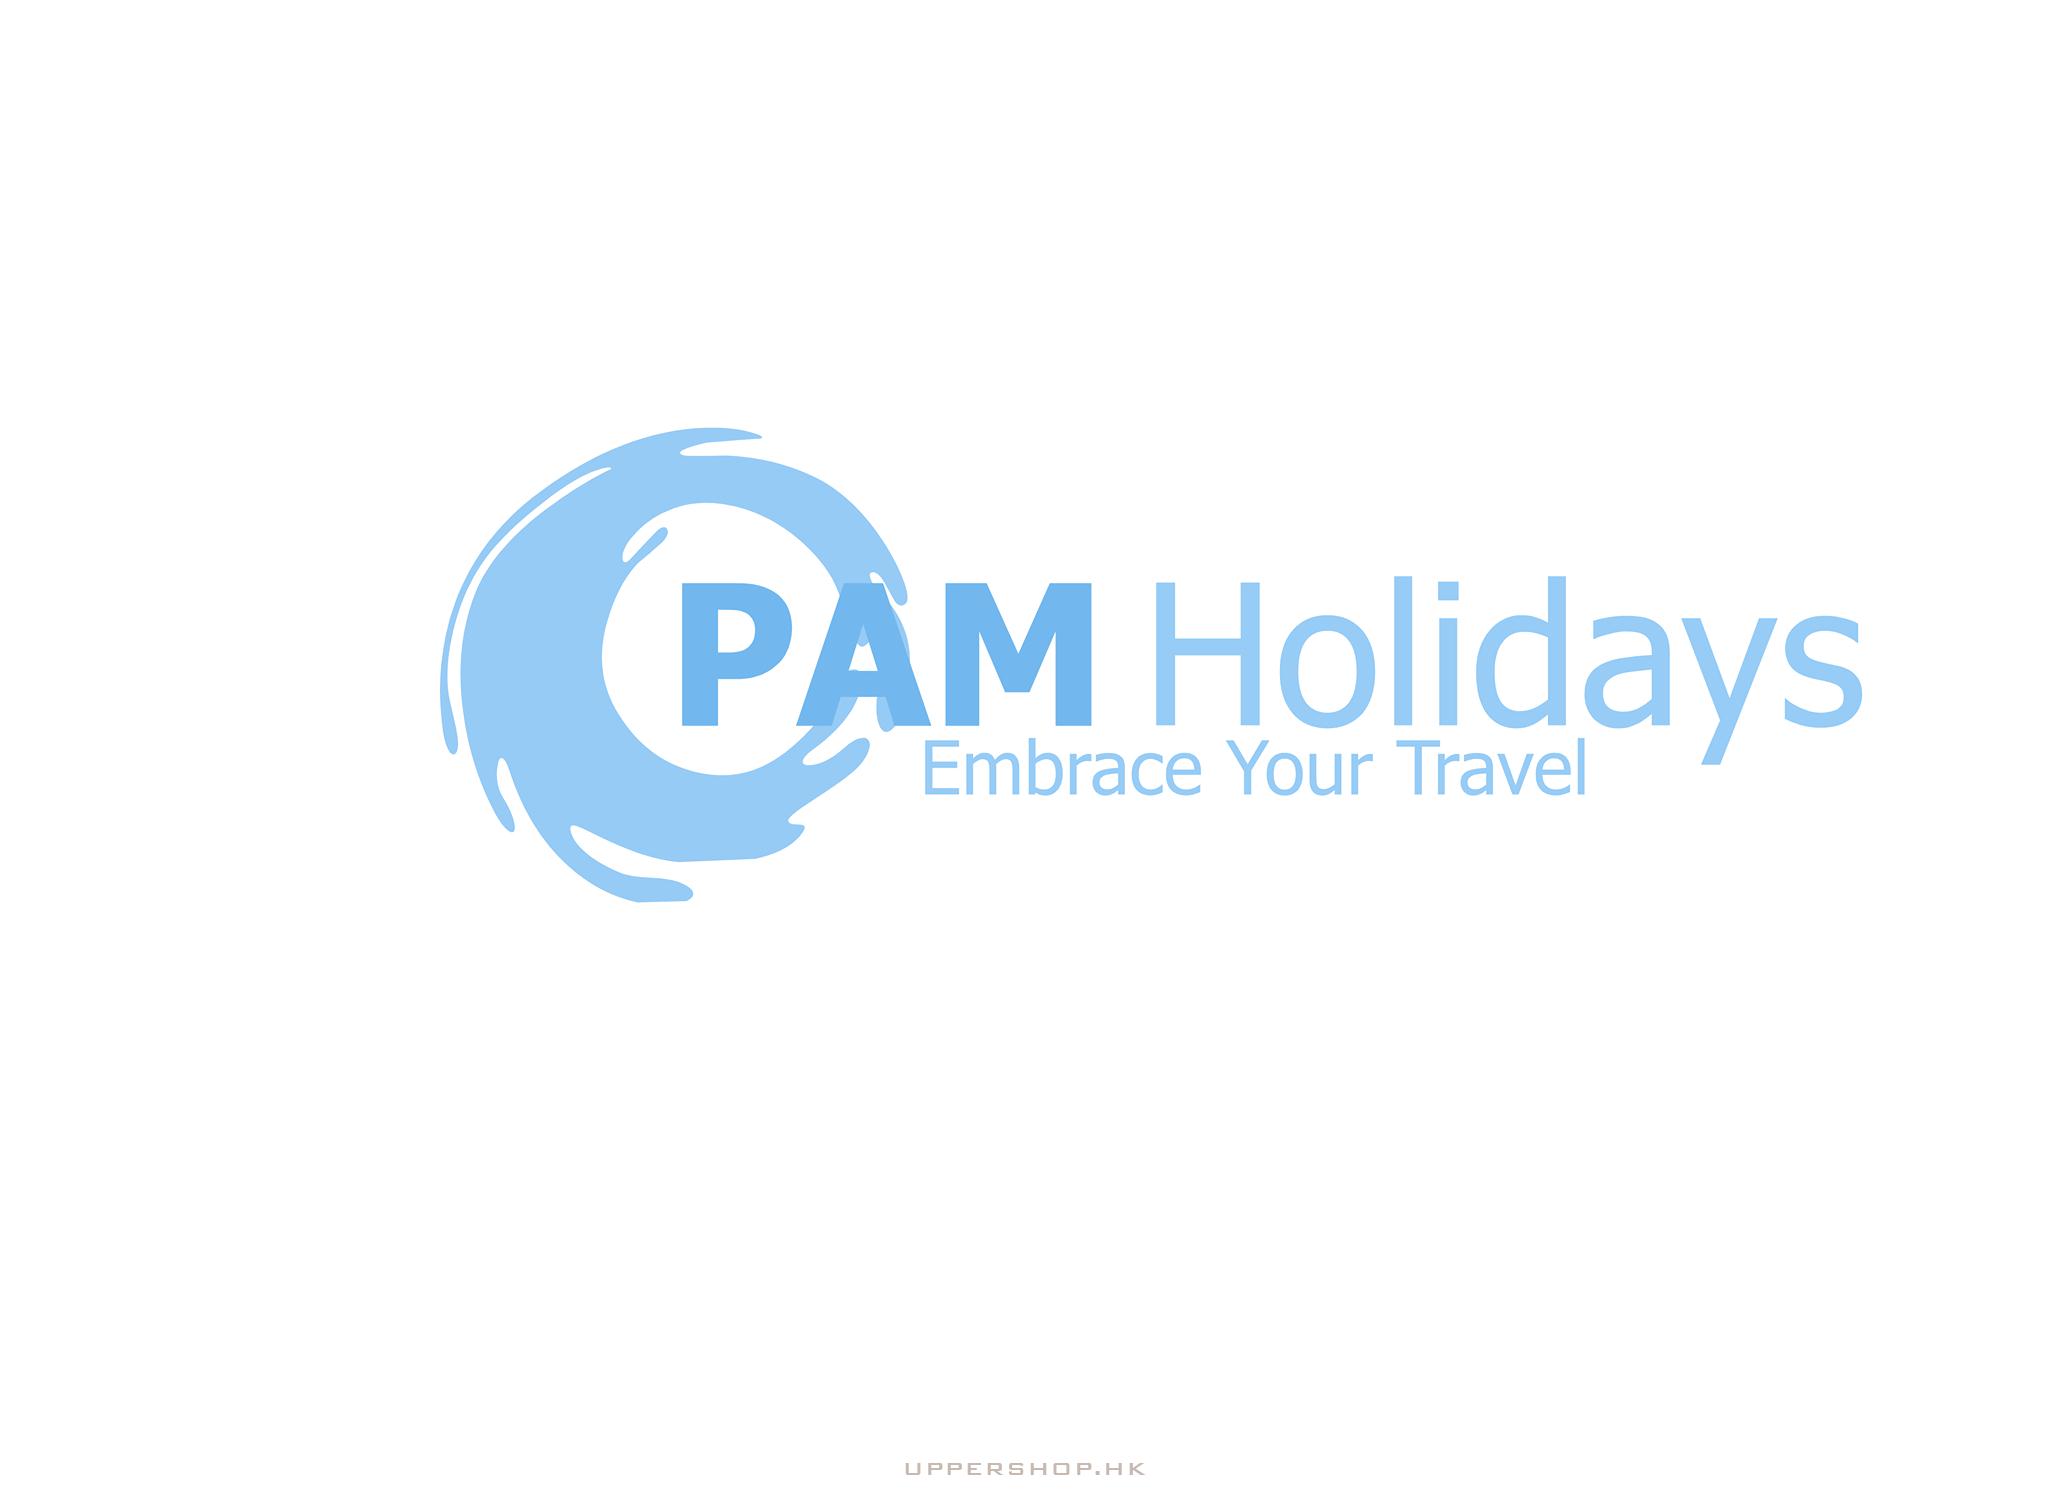 PAM Holidays